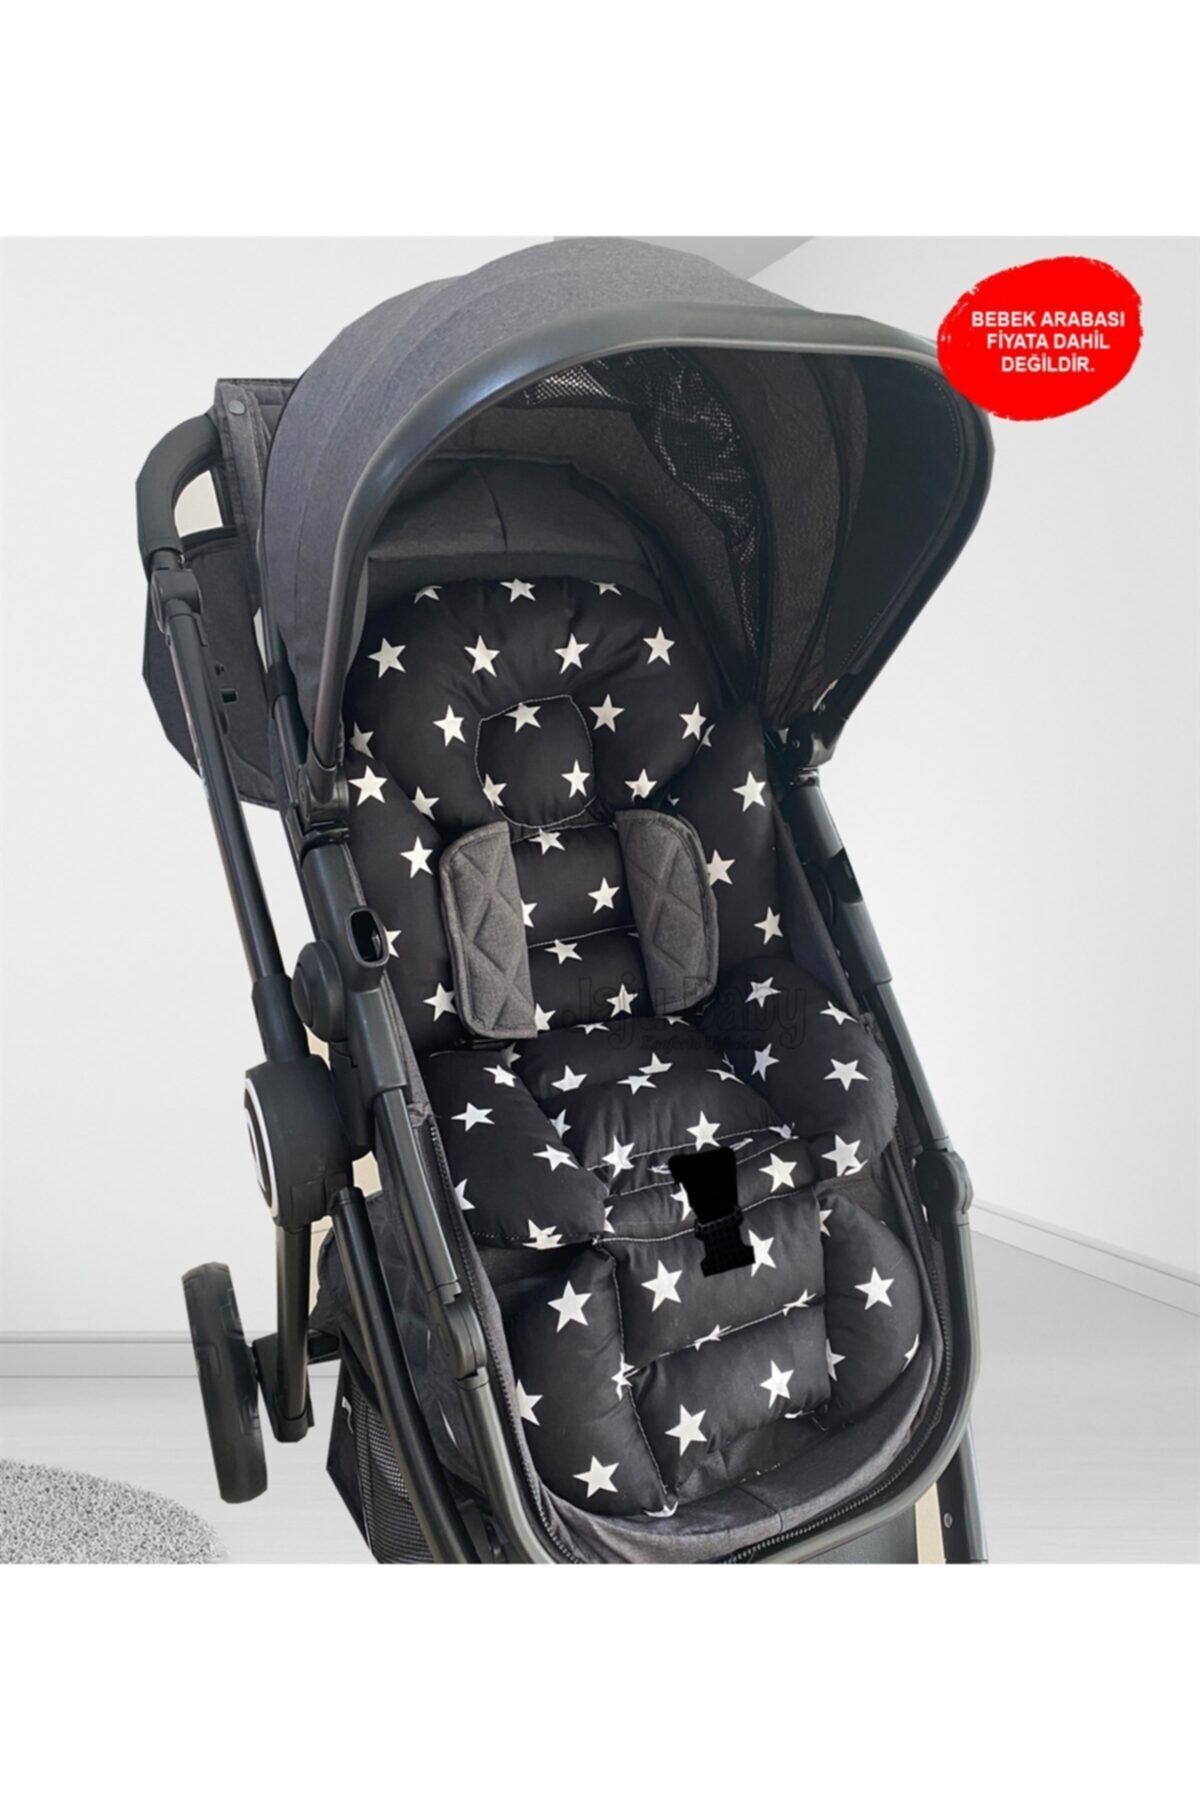 Jaju Baby Siyah Yıldız Bebek Arabası Minderi